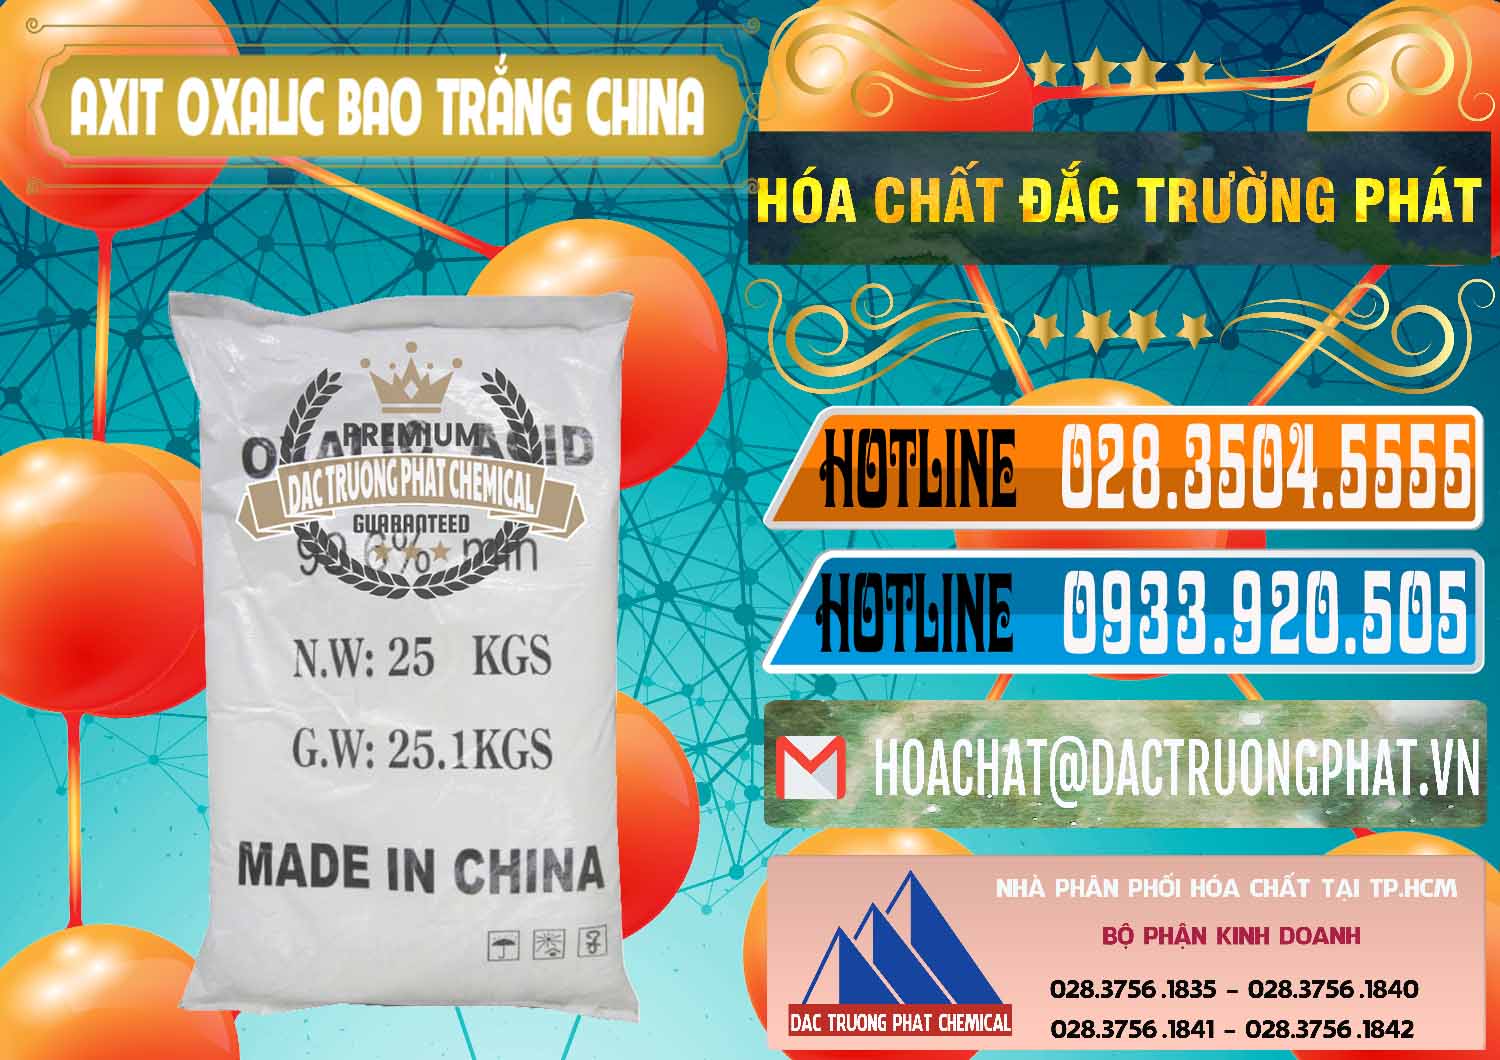 Chuyên nhập khẩu và bán Acid Oxalic – Axit Oxalic 99.6% Bao Trắng Trung Quốc China - 0270 - Chuyên cung cấp - nhập khẩu hóa chất tại TP.HCM - stmp.net